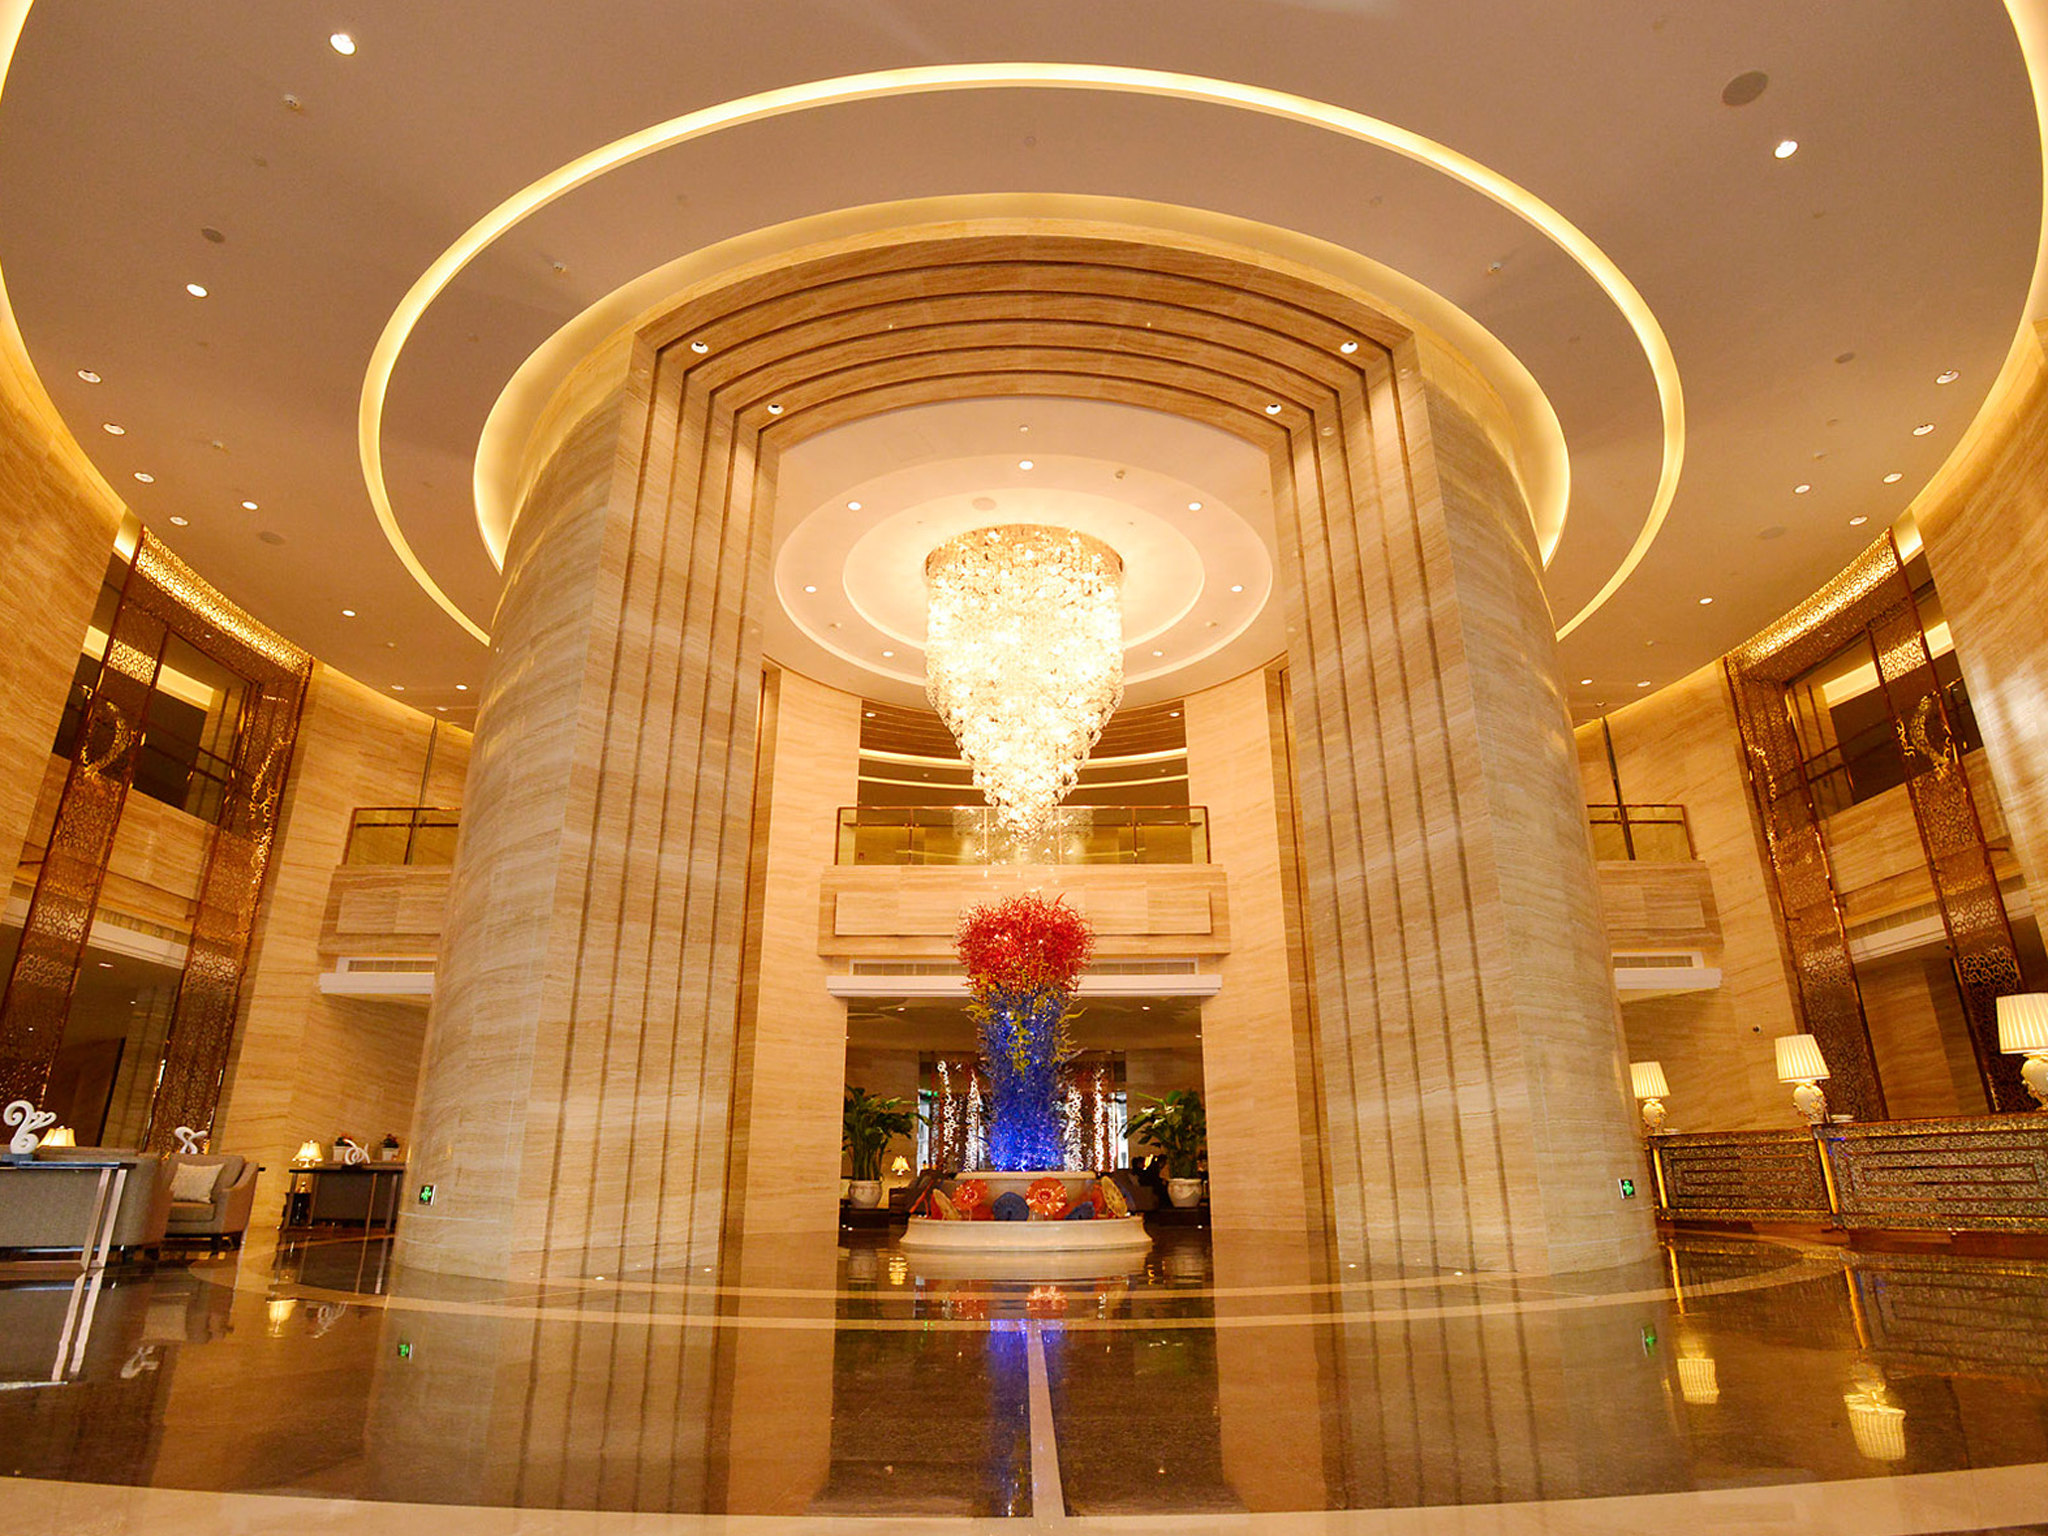 上海圣诺亚皇冠假日酒店 音乐餐厅